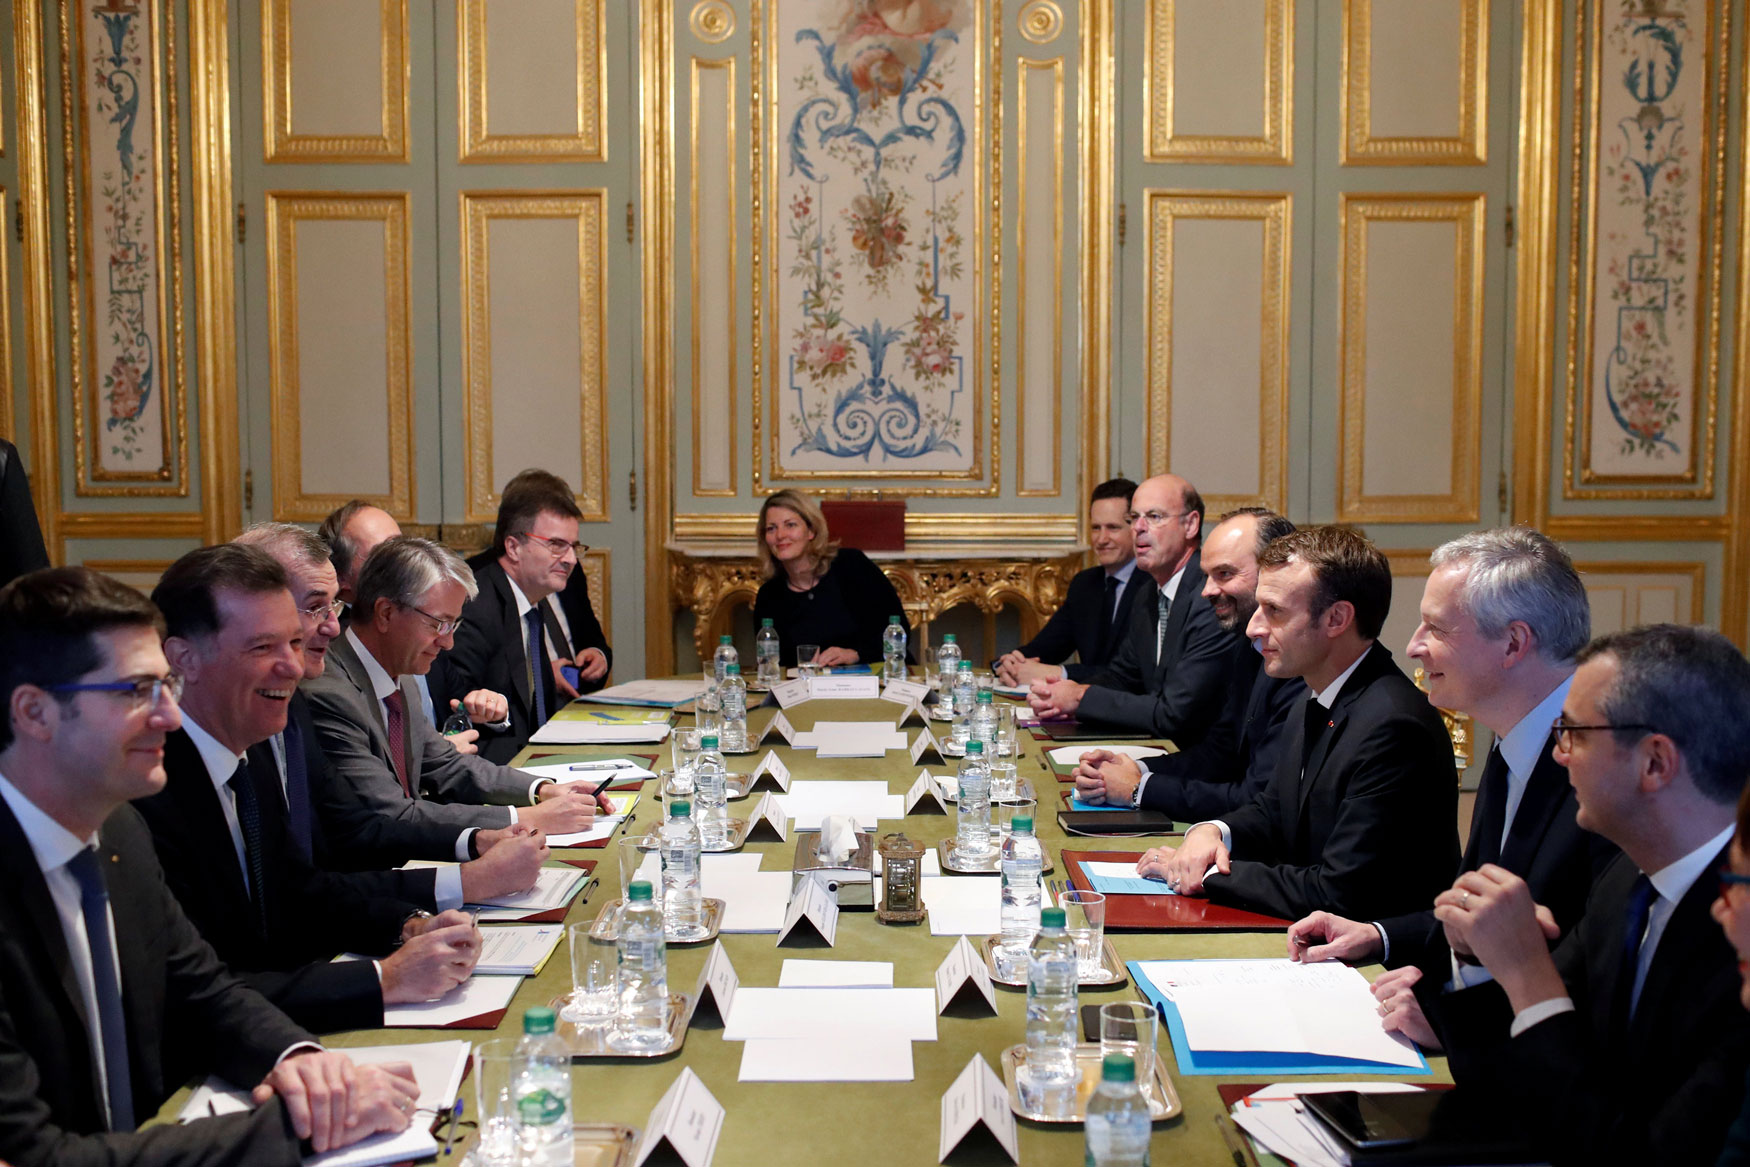 الرئيس الفرنسي امانويل ماكرون يواصل لقاءاته ضمن جهود احتواء تداعيات أسوأ موجة احتجاجات